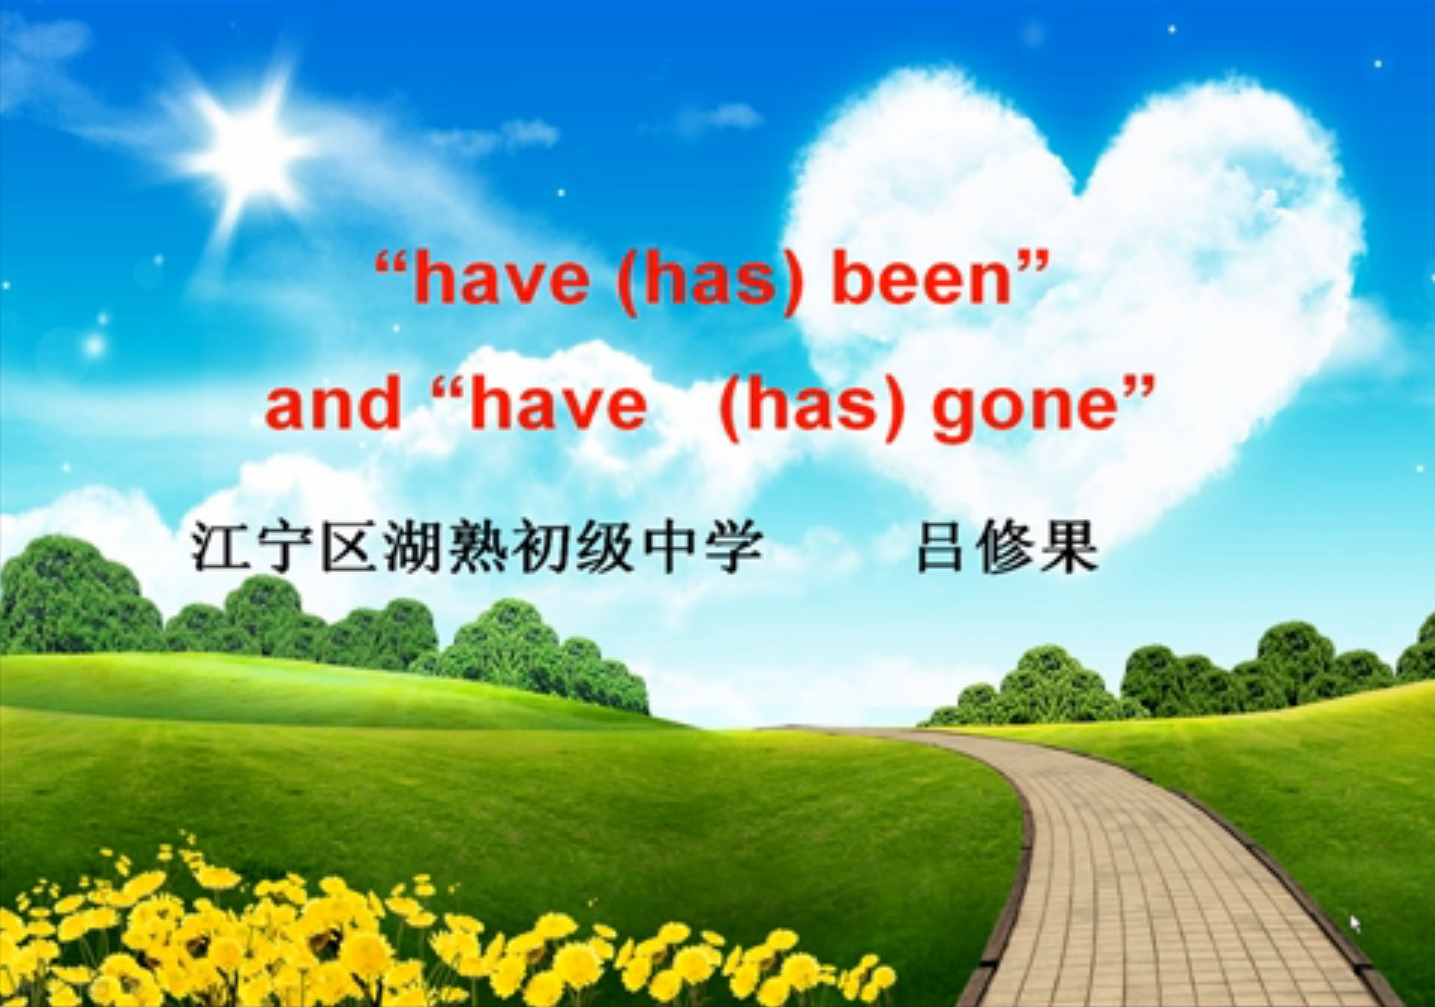 点击观看《"have/has been" and "have/has gone"》